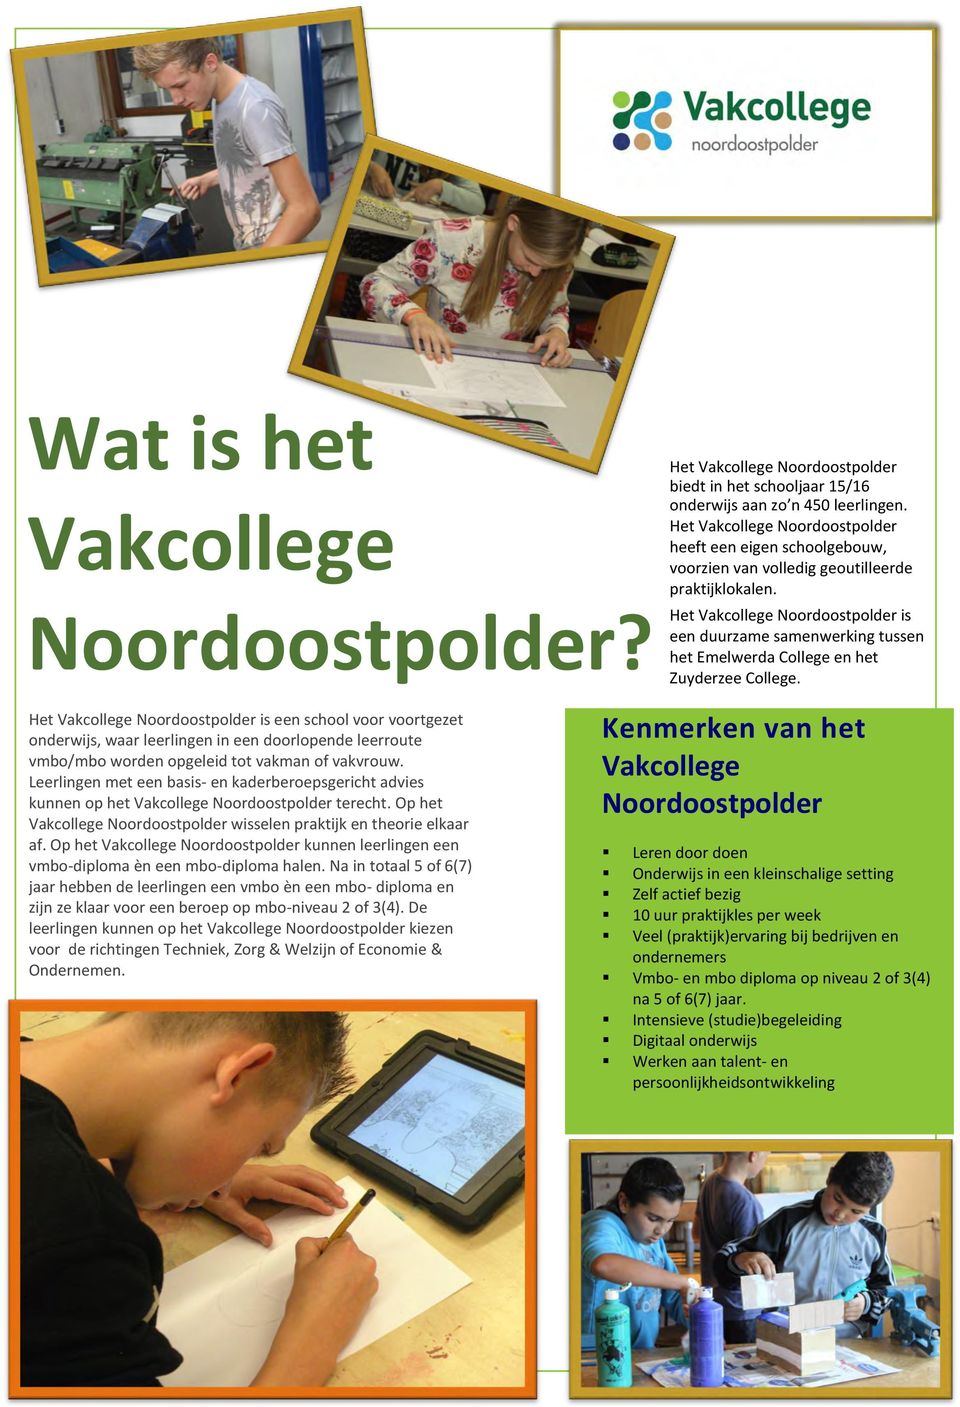 Het Vakcollege Noordoostpolder is een duurzame samenwerking tussen het Emelwerda College en het Zuyderzee College.